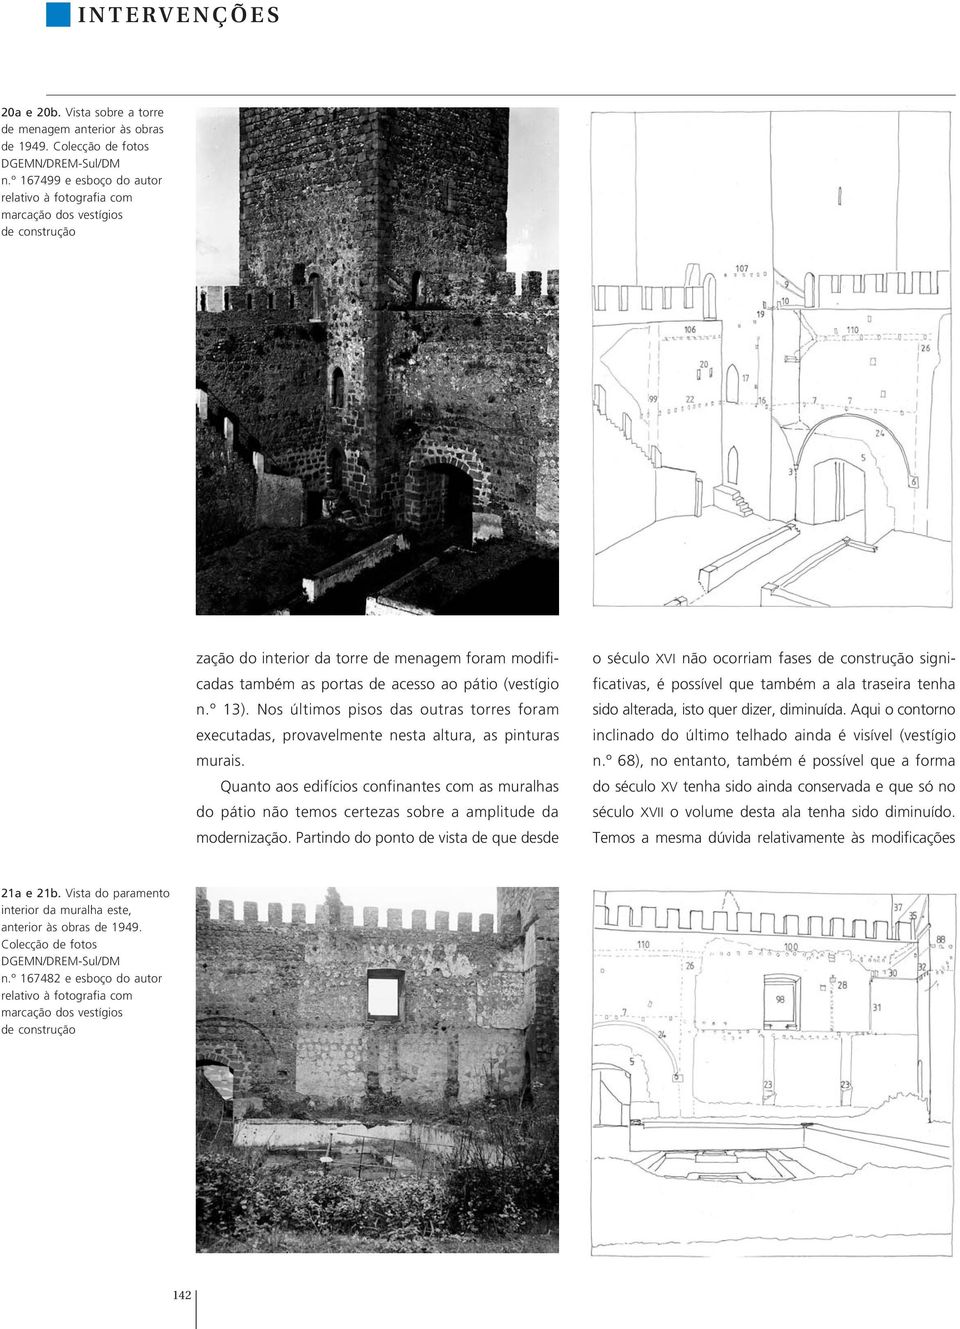 Nos últimos pisos das outras torres foram executadas, provavelmente nesta altura, as pinturas murais.